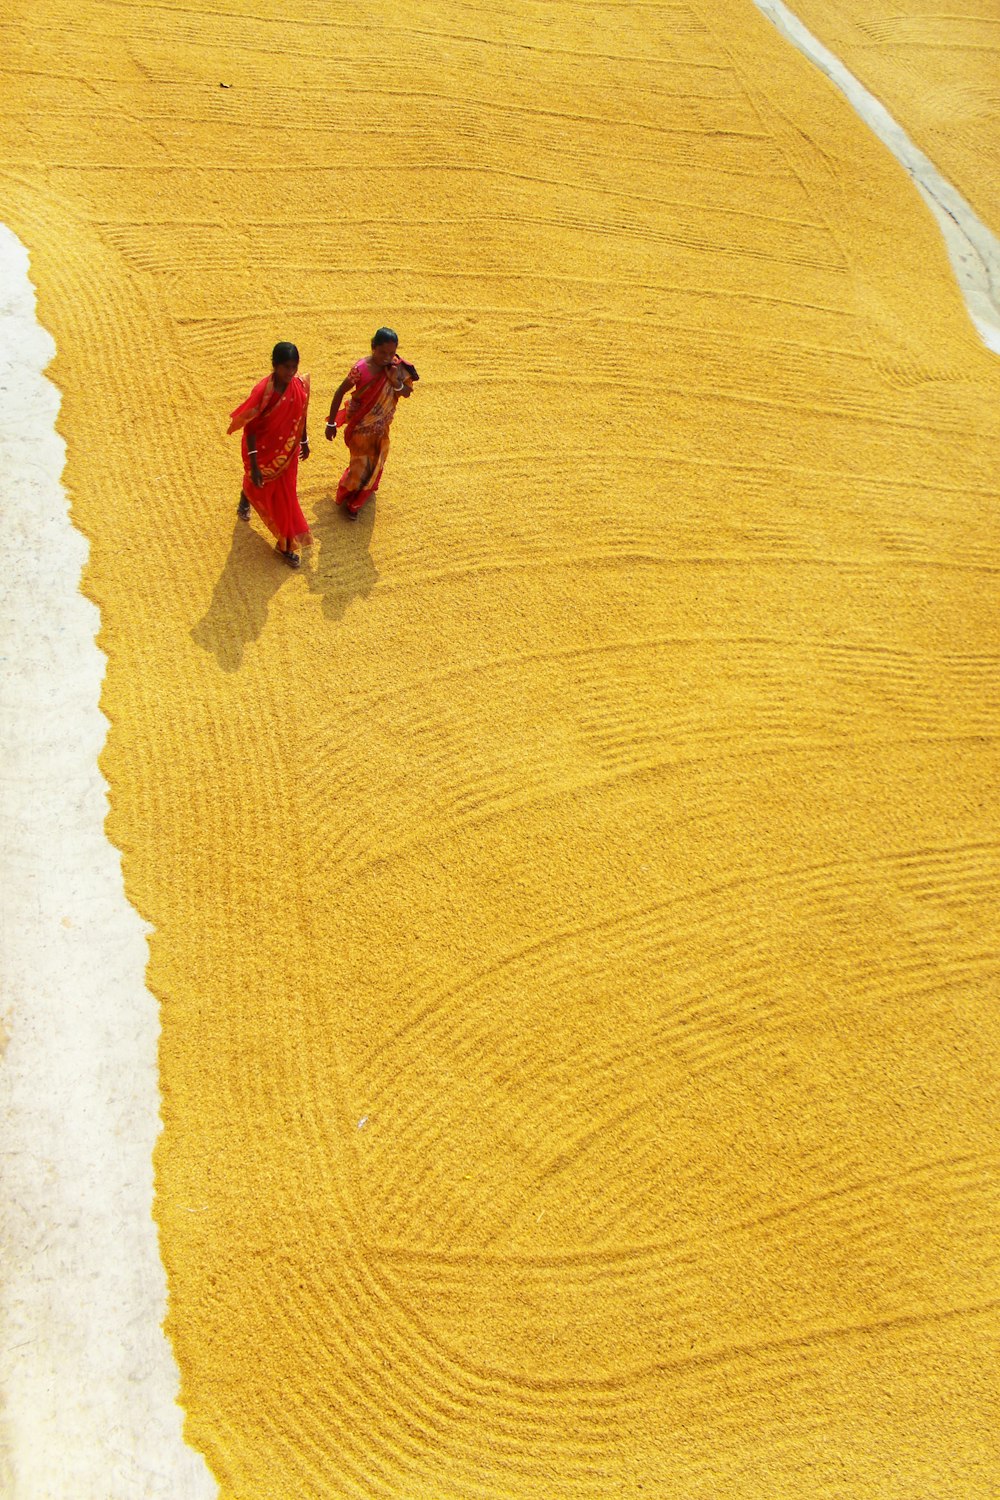 2 women walking on sand during daytime